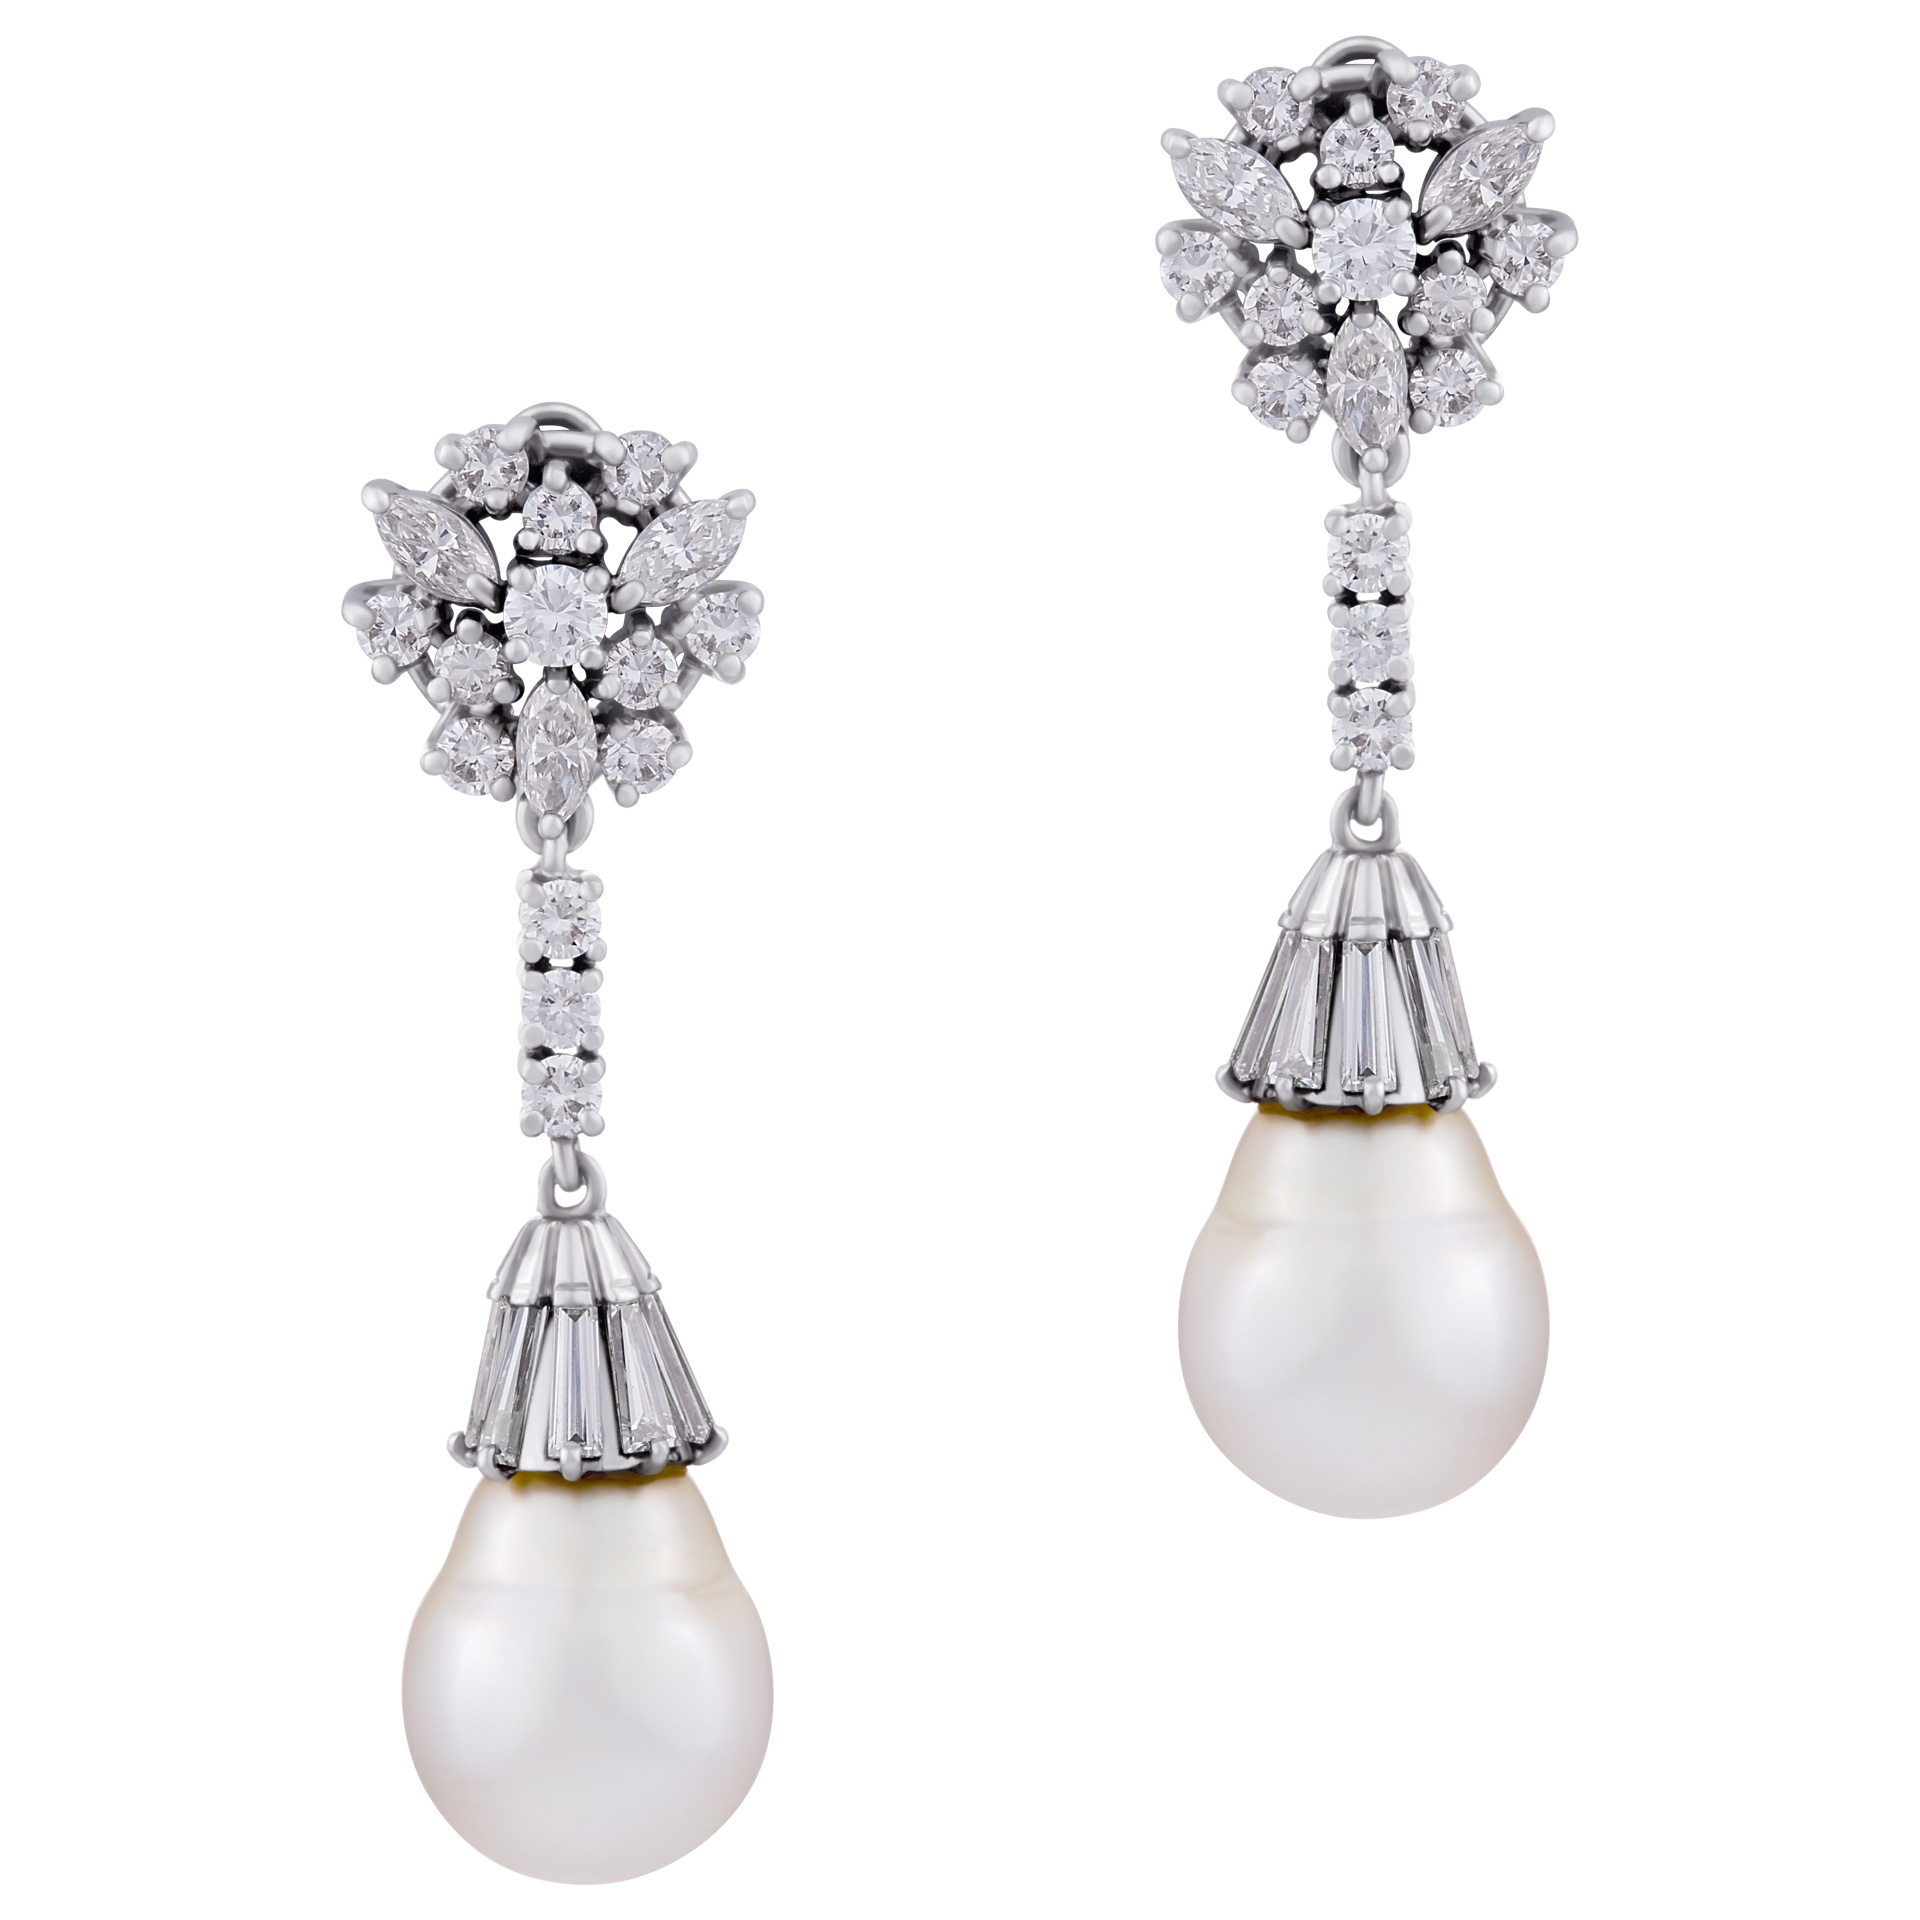 South Sea Pearl earrings in platinum